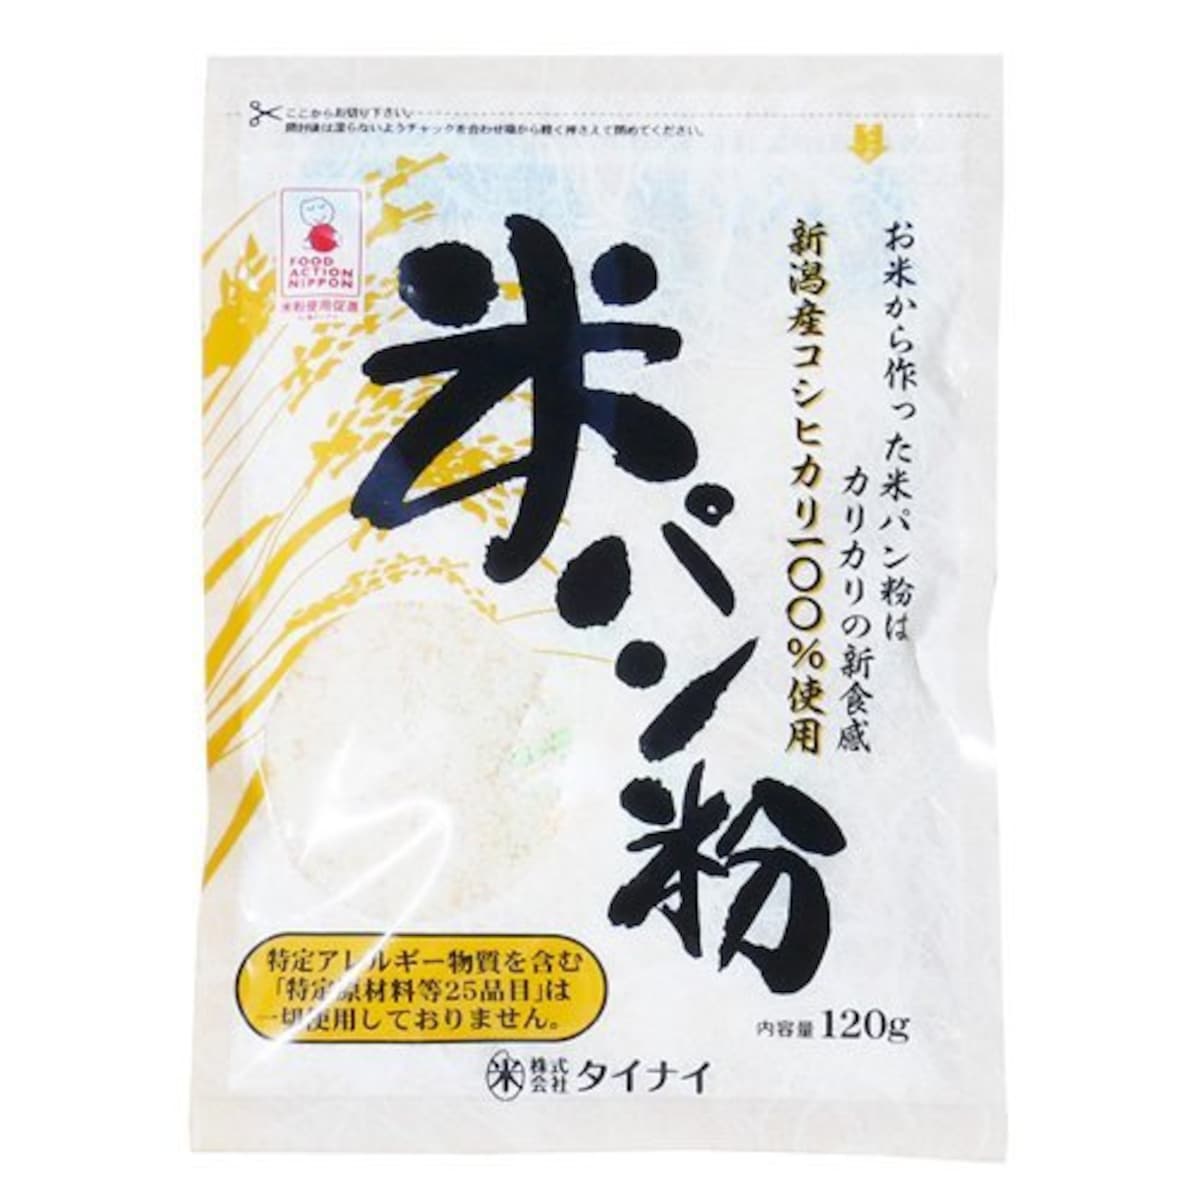 タイナイ 新潟産コシヒカリ100%使用 米パン粉